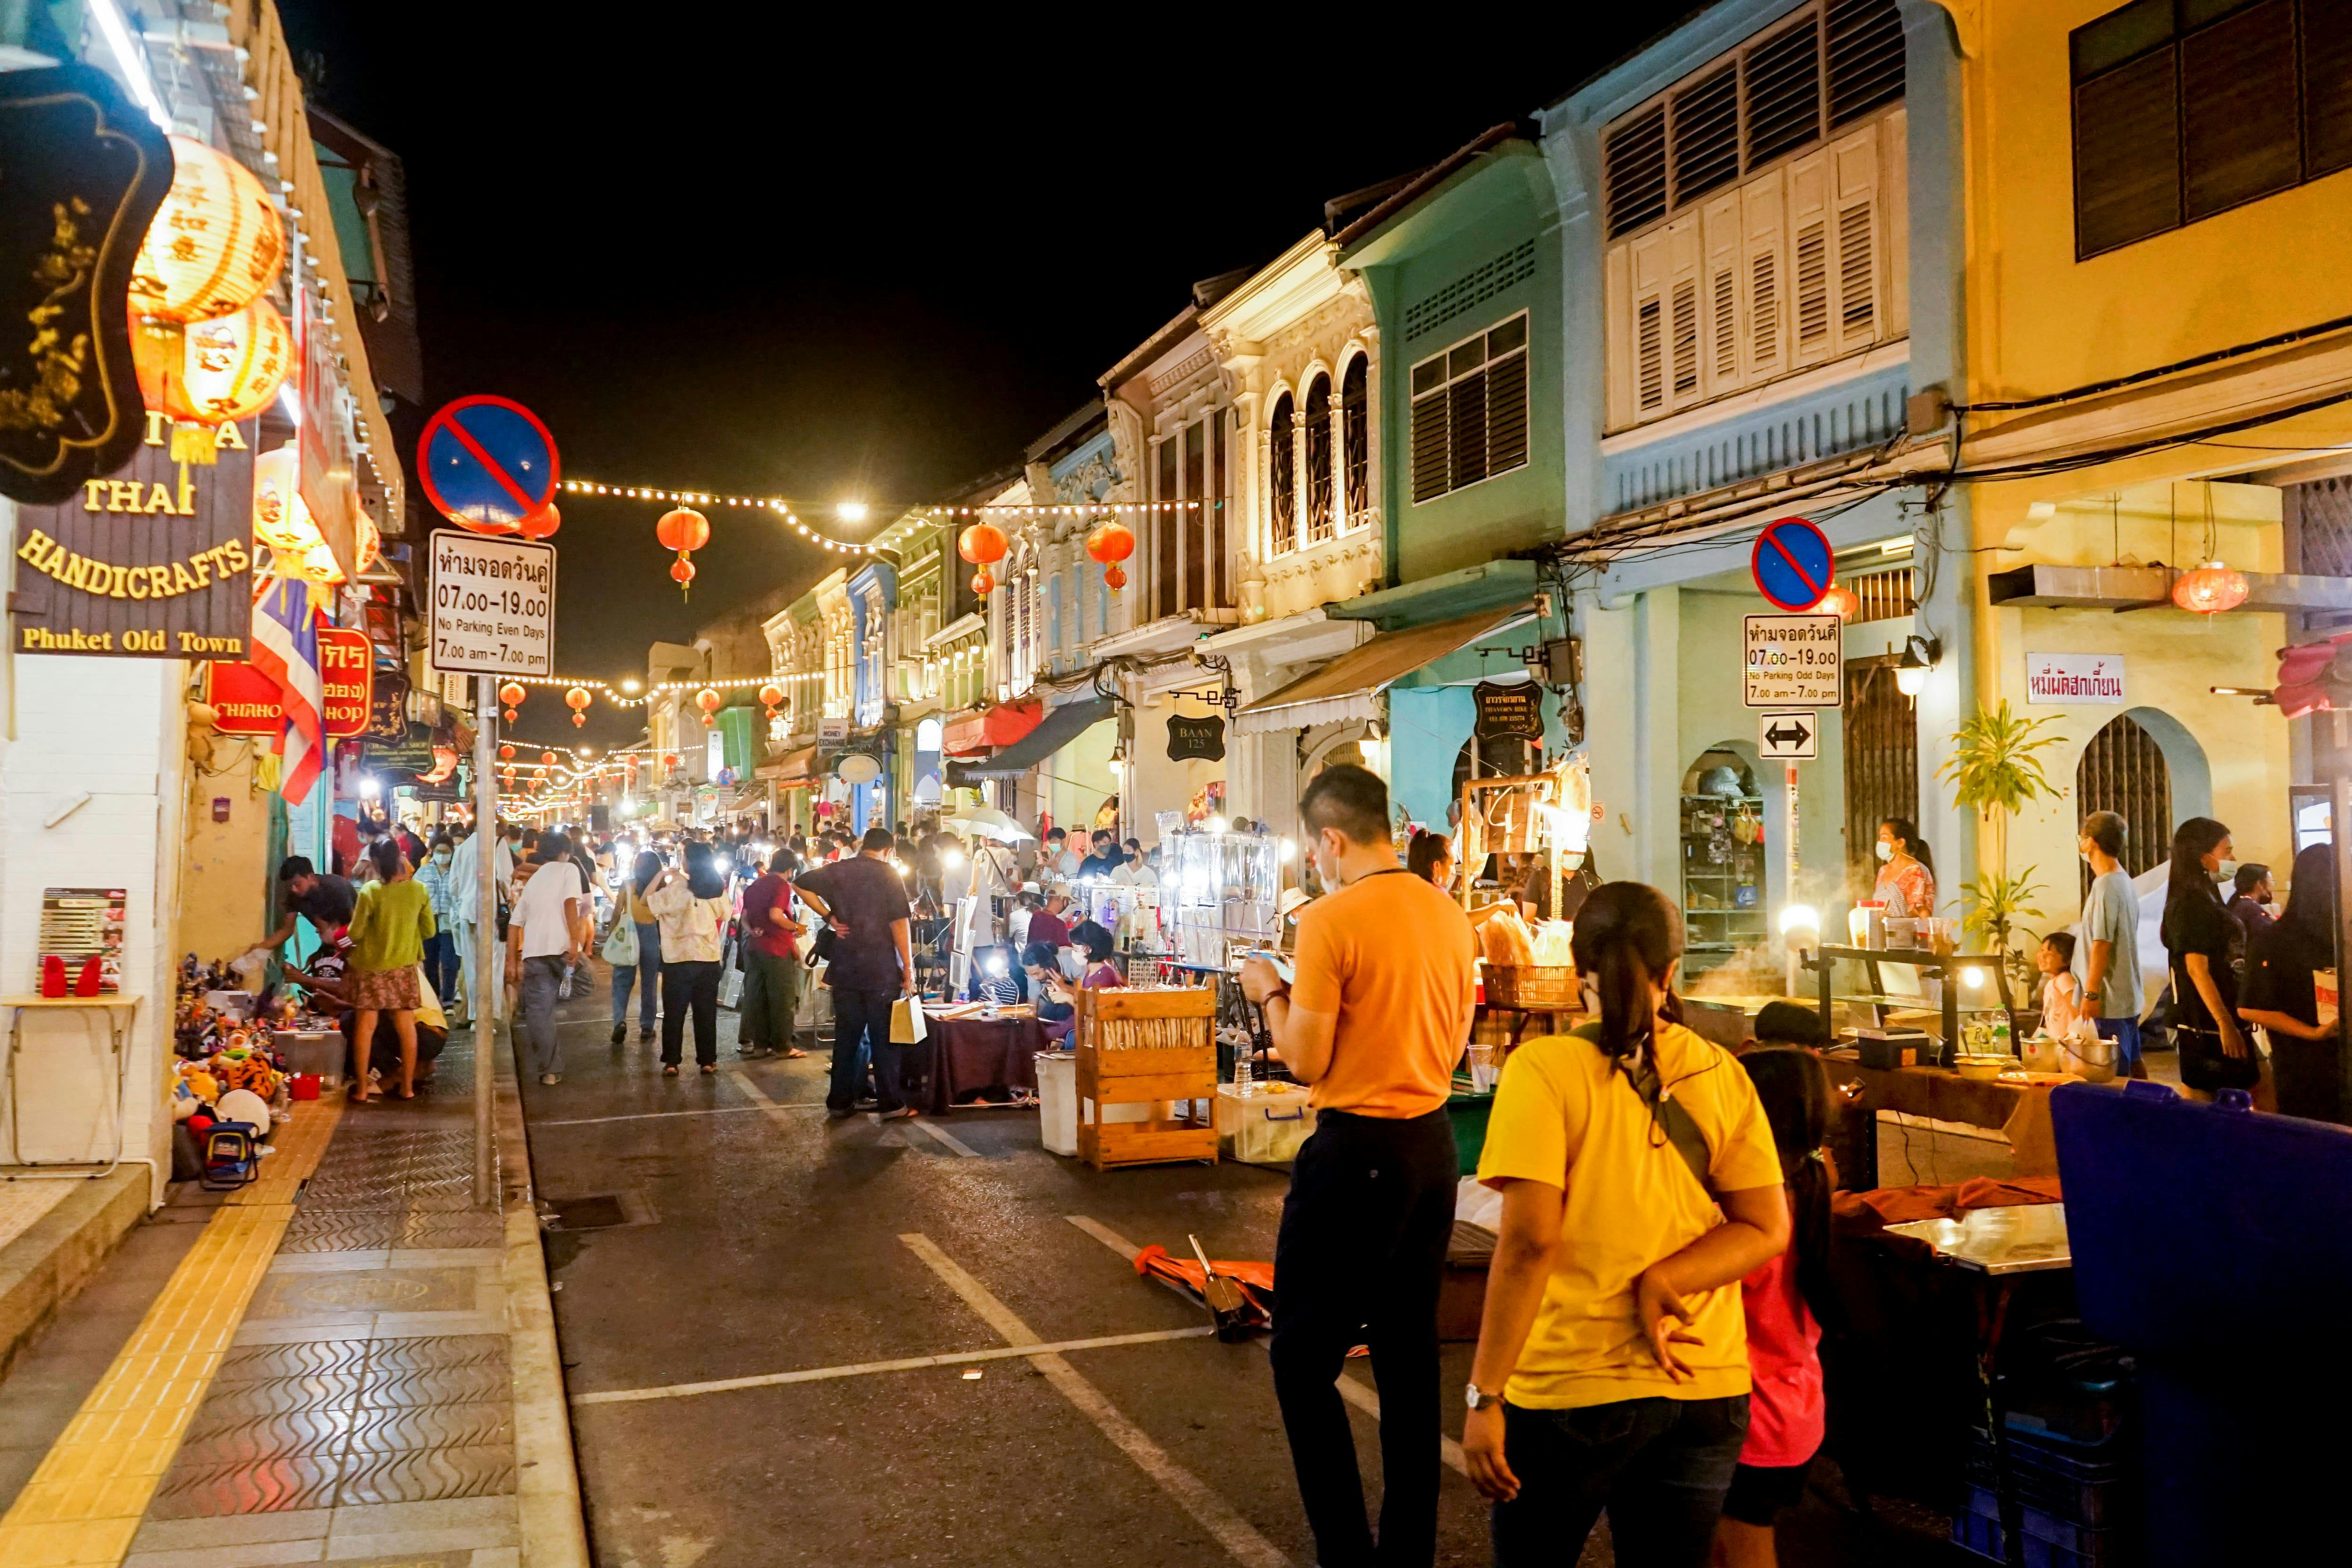 STEP Walking Tour of Phuket with Thalong Road Night Market